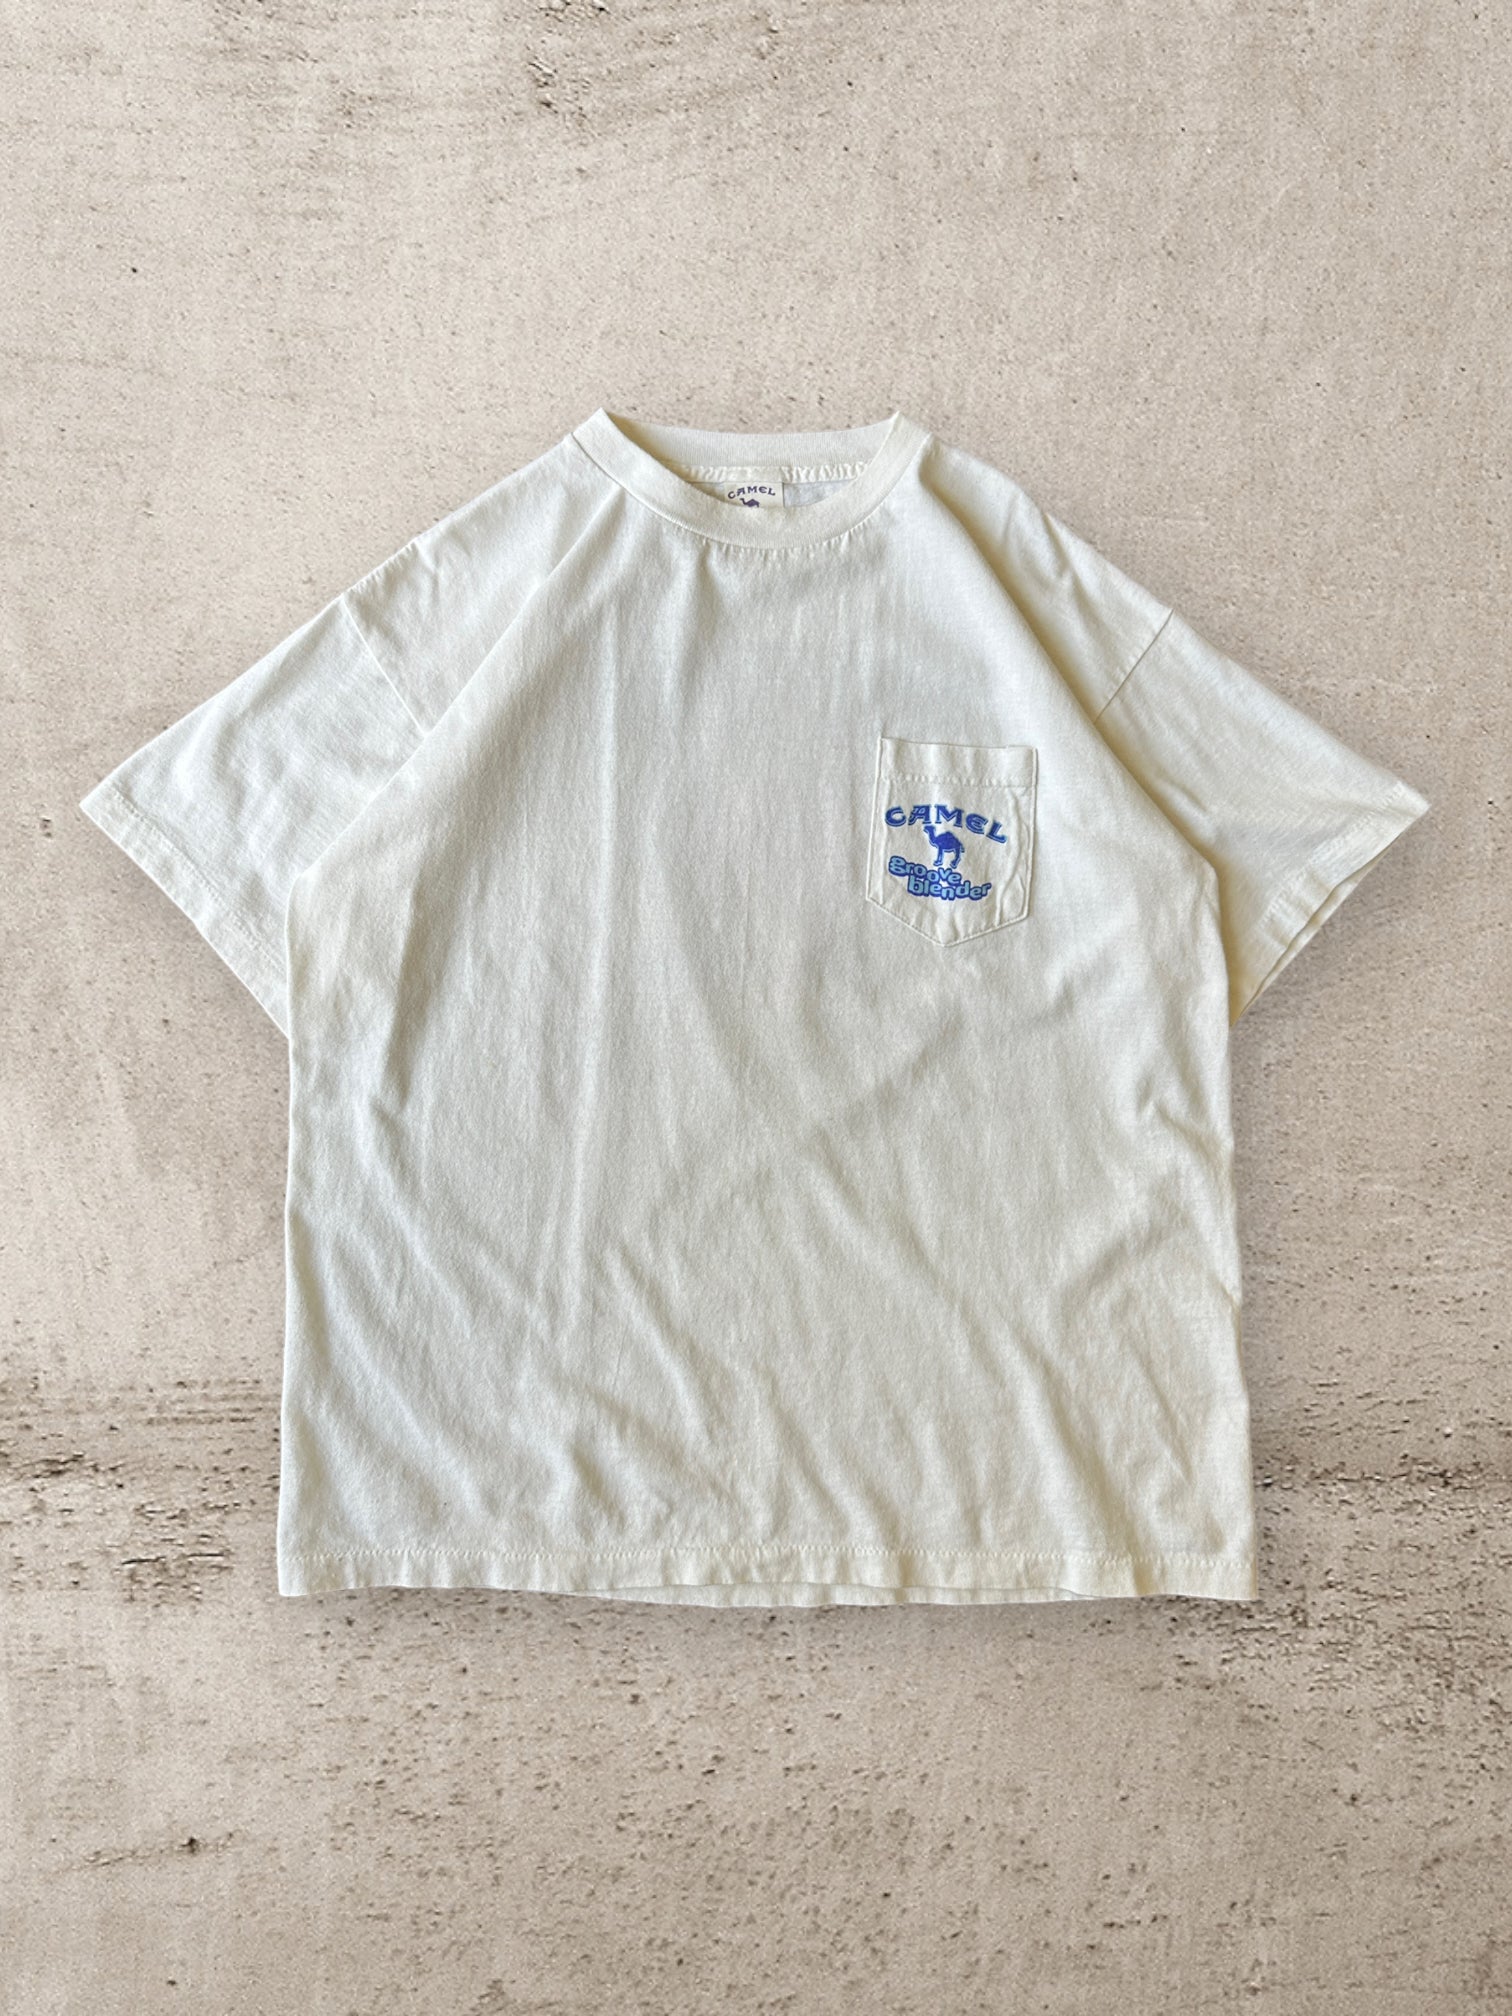 90s Camel Cigarettes Groove Bender Pocket T-Shirt - XL